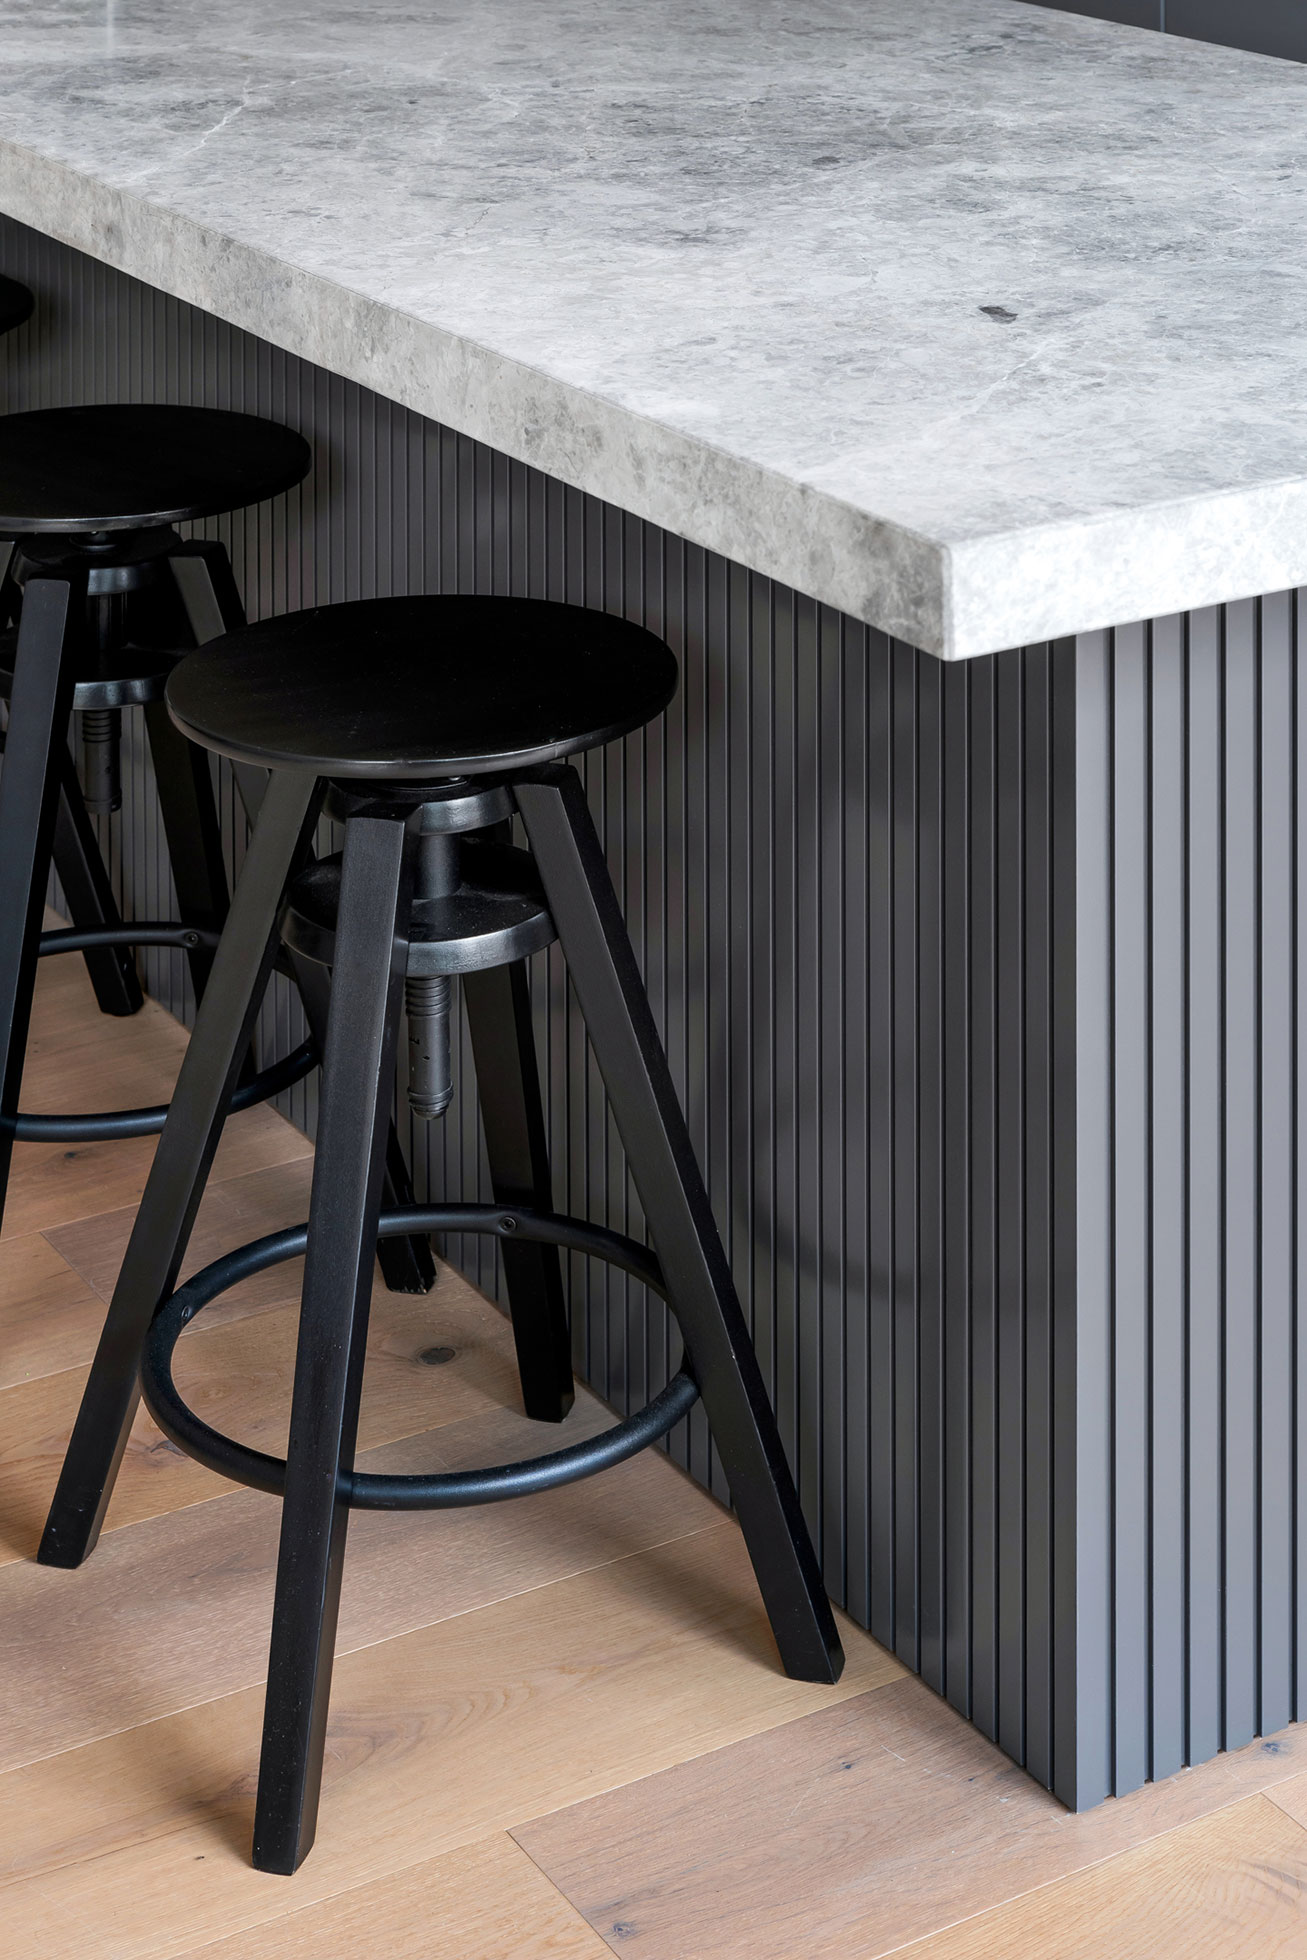 interior-kitchen-bench-detail-curate-apartment-development-ckairouz-architects